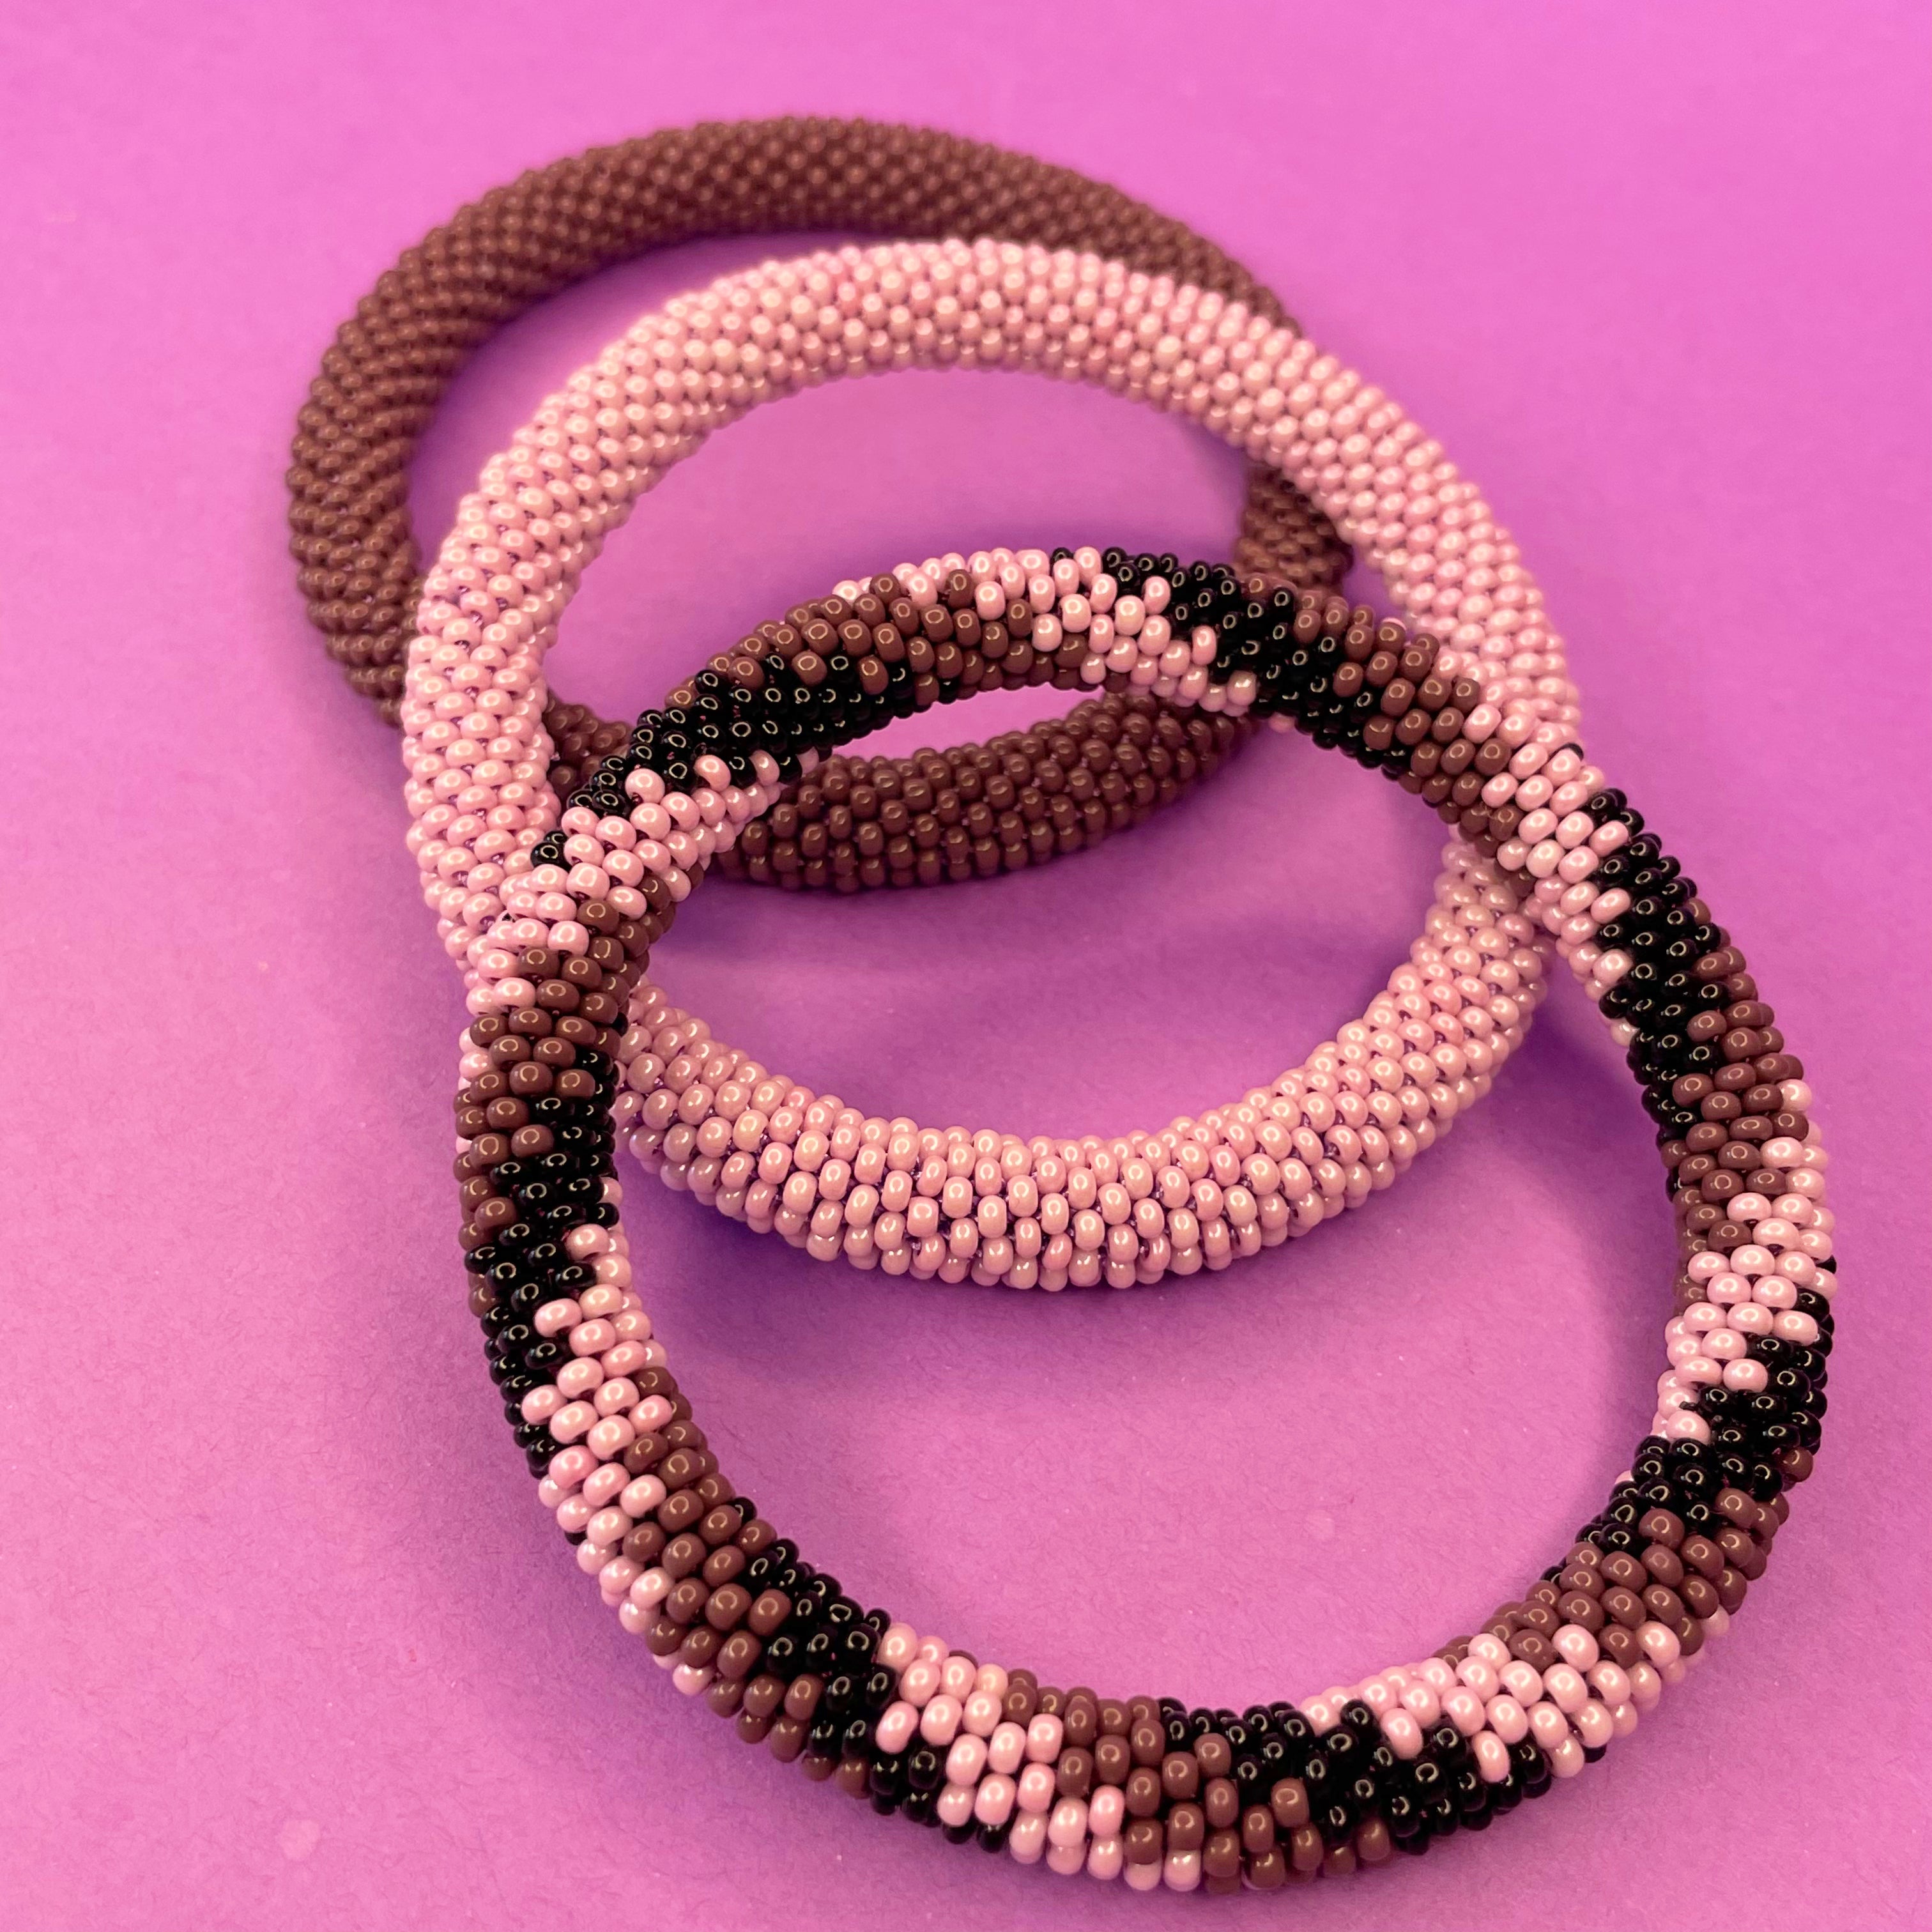 July Jade Rope Bracelet set in 3